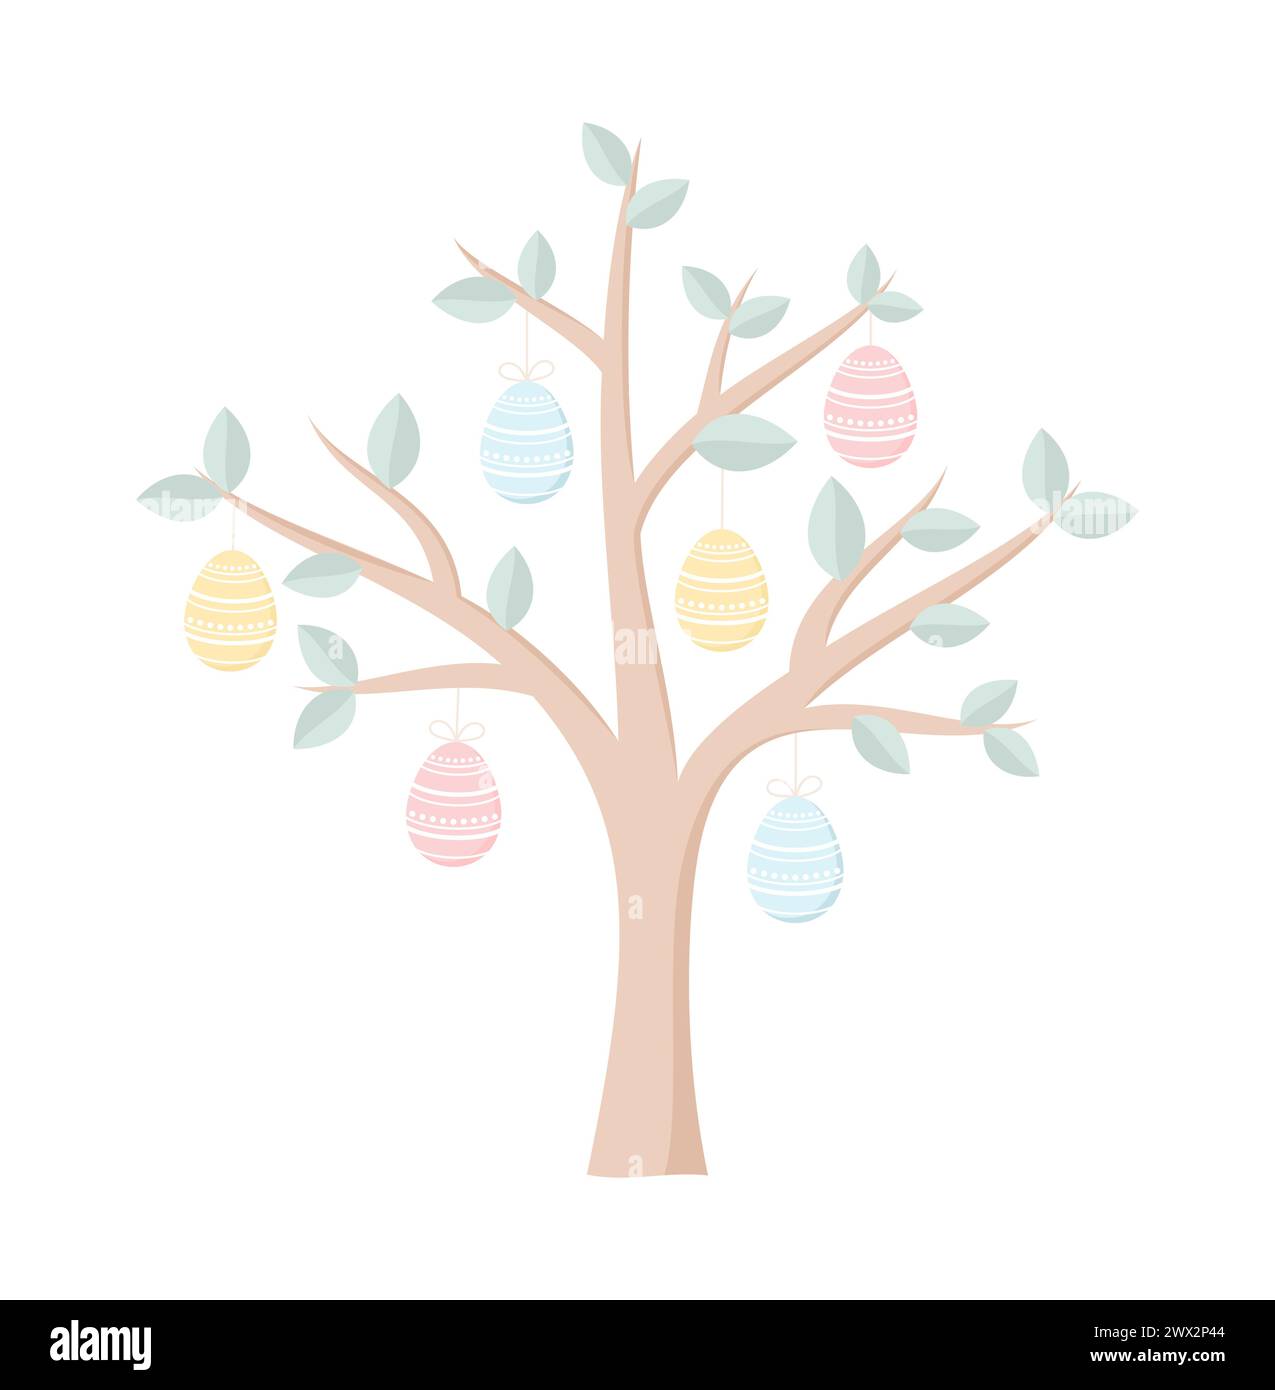 Ein Baum mit bunten Ostereiern, isoliert auf weißem Hintergrund. Illustration des flachen Vektors Stock Vektor